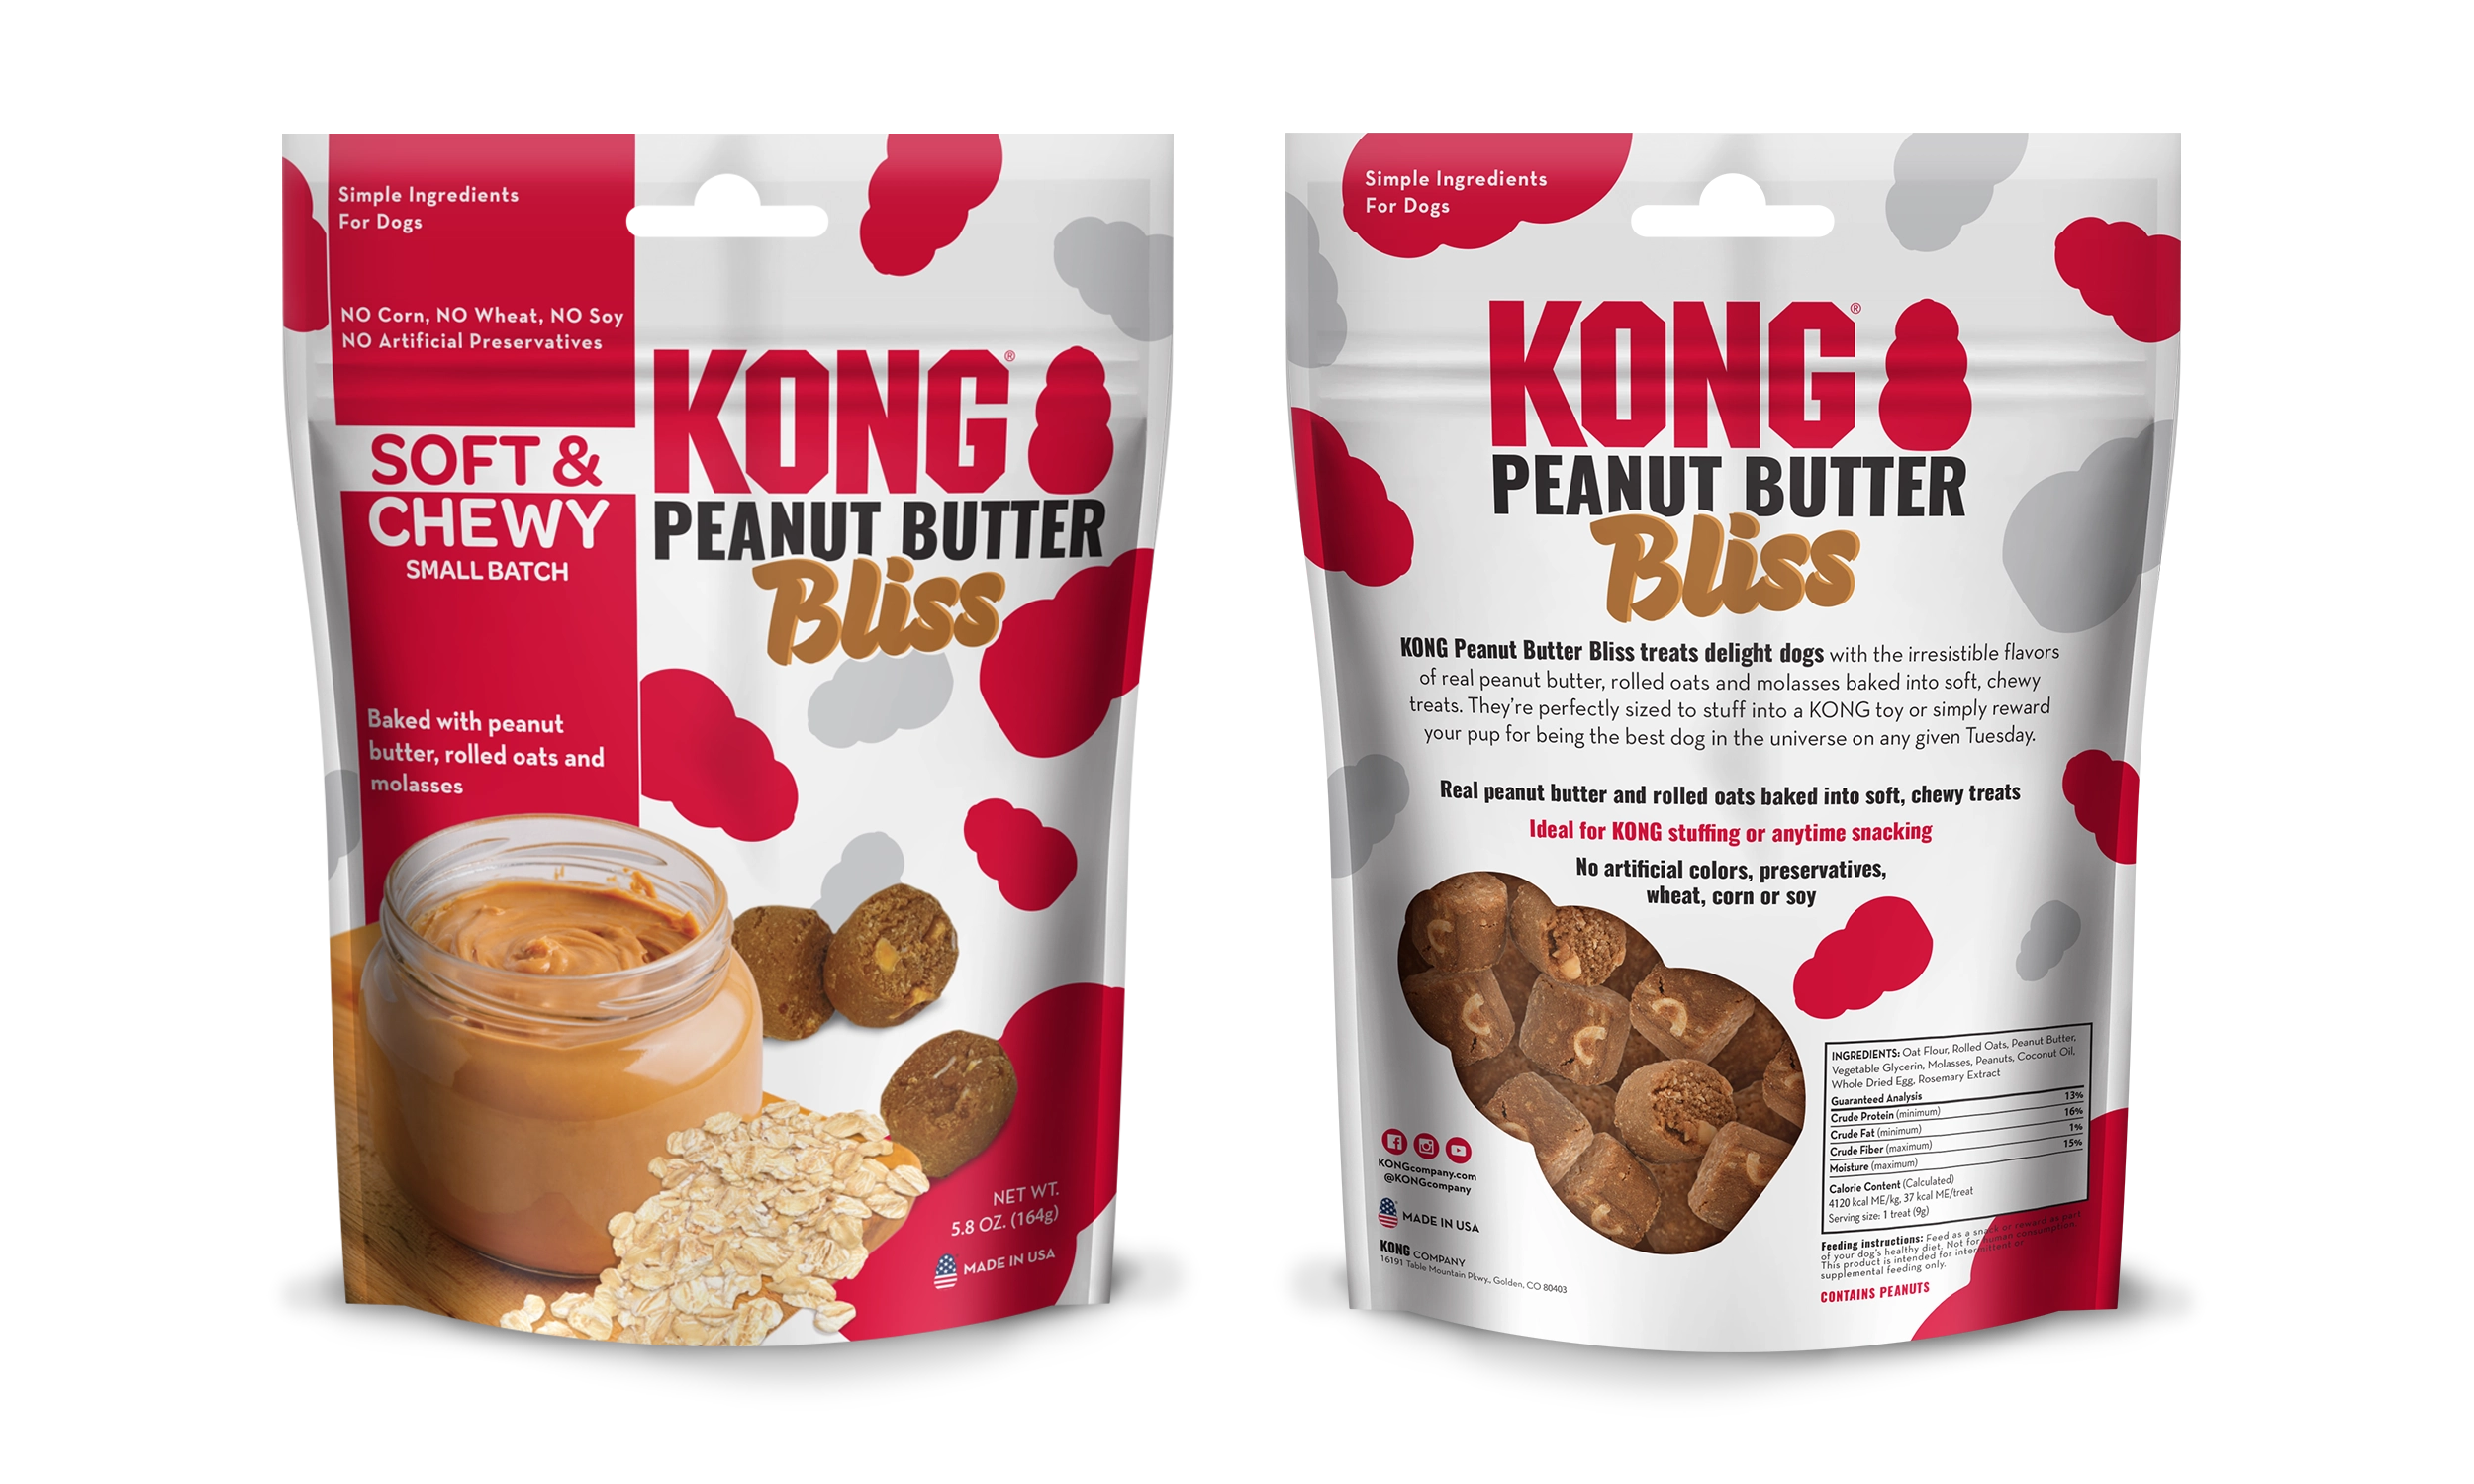 KONG Peanut Butter Bliss Bags